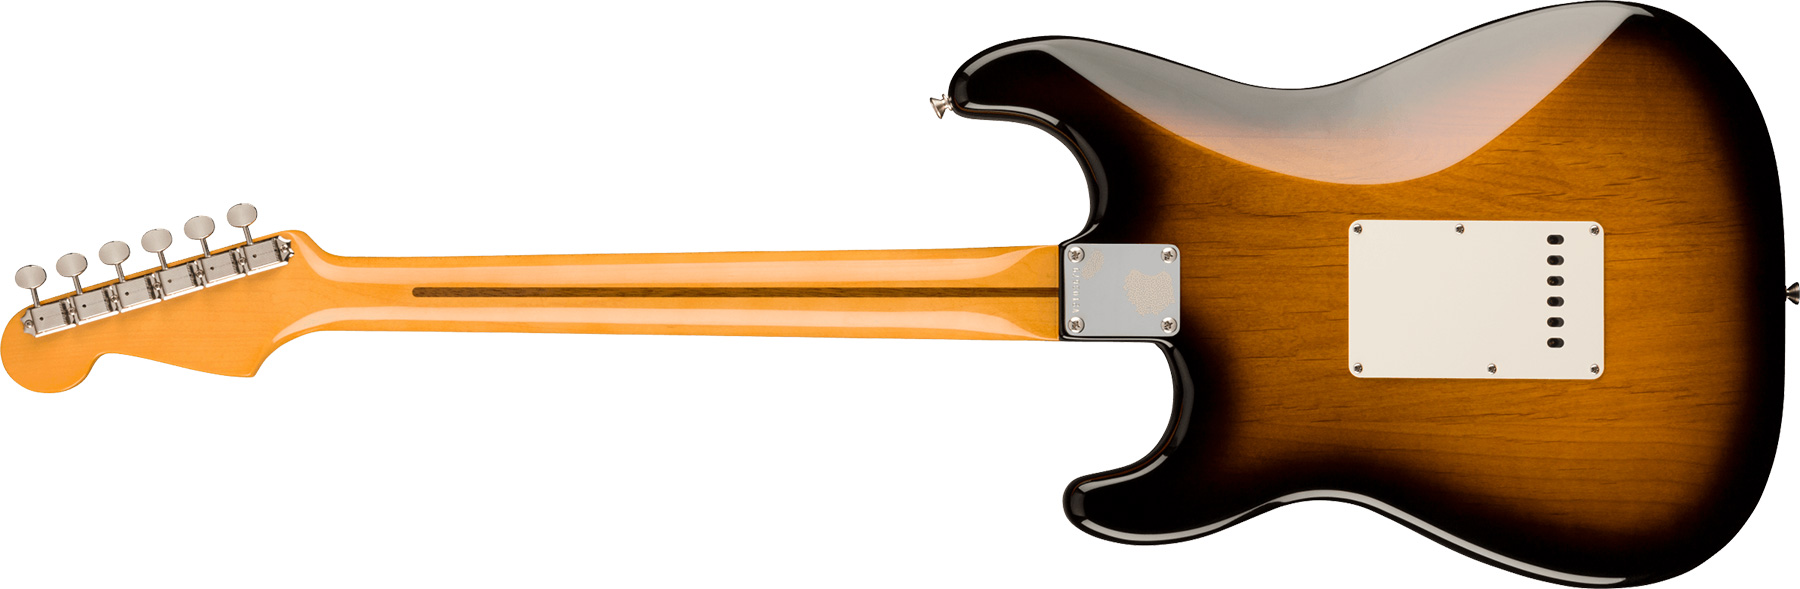 Fender Strat 1957 American Vintage Ii Usa 3s Trem Mn - 2-color Sunburst - Guitarra eléctrica con forma de str. - Variation 1